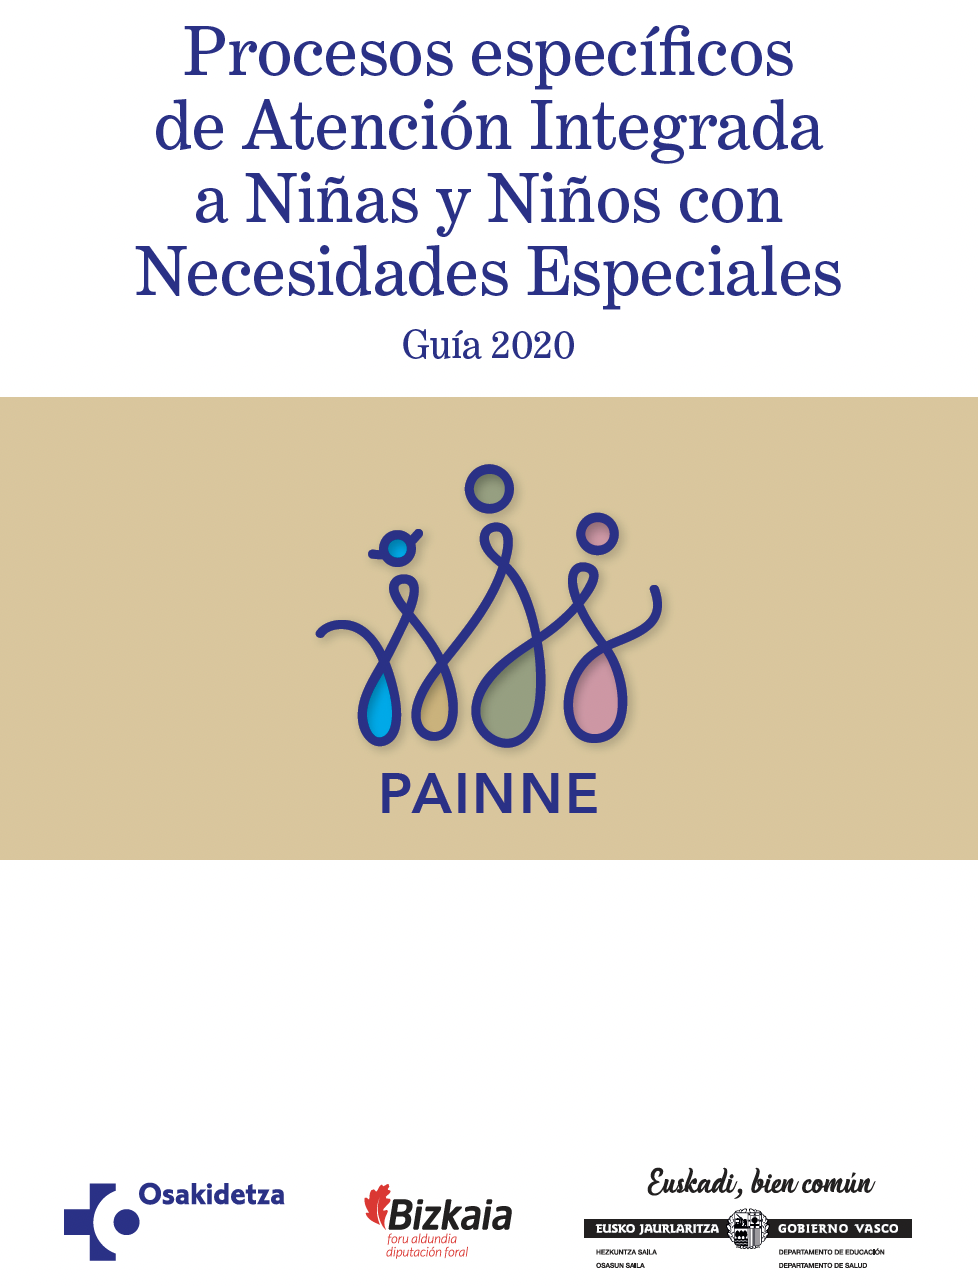 Procesos específicos de Atención Integrada a Niñas y Niños con Necesidades Especiales. Guía 2020